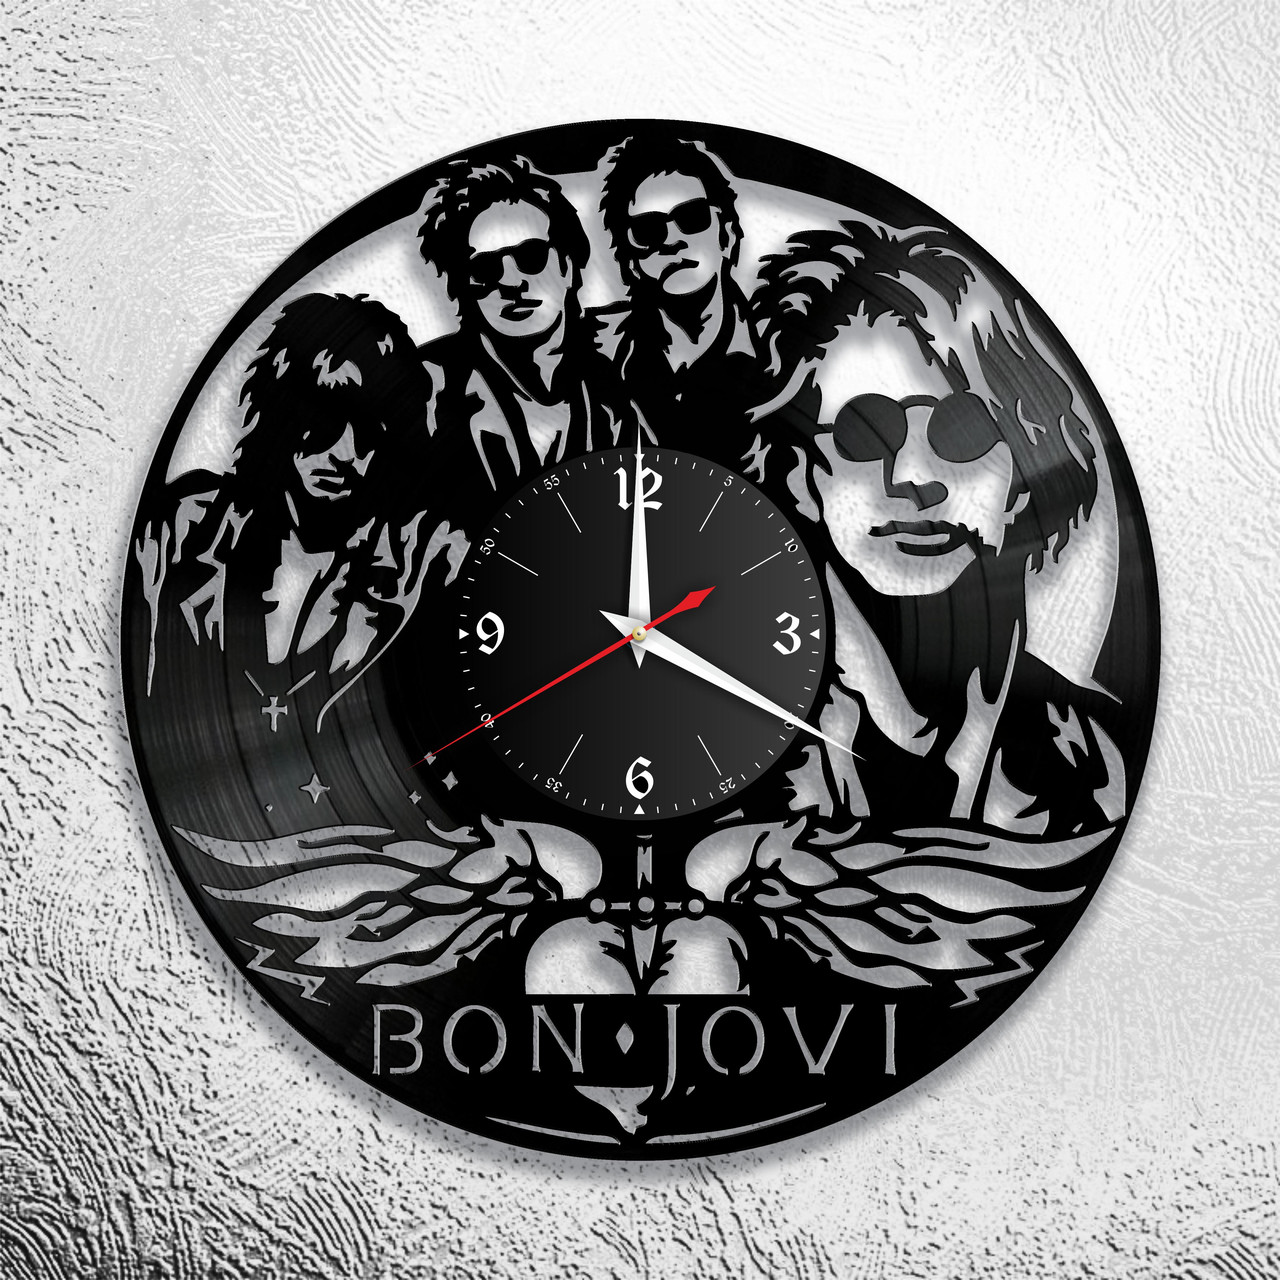 Часы из виниловой пластинки "Bon Jovi  "версия 1, фото 1